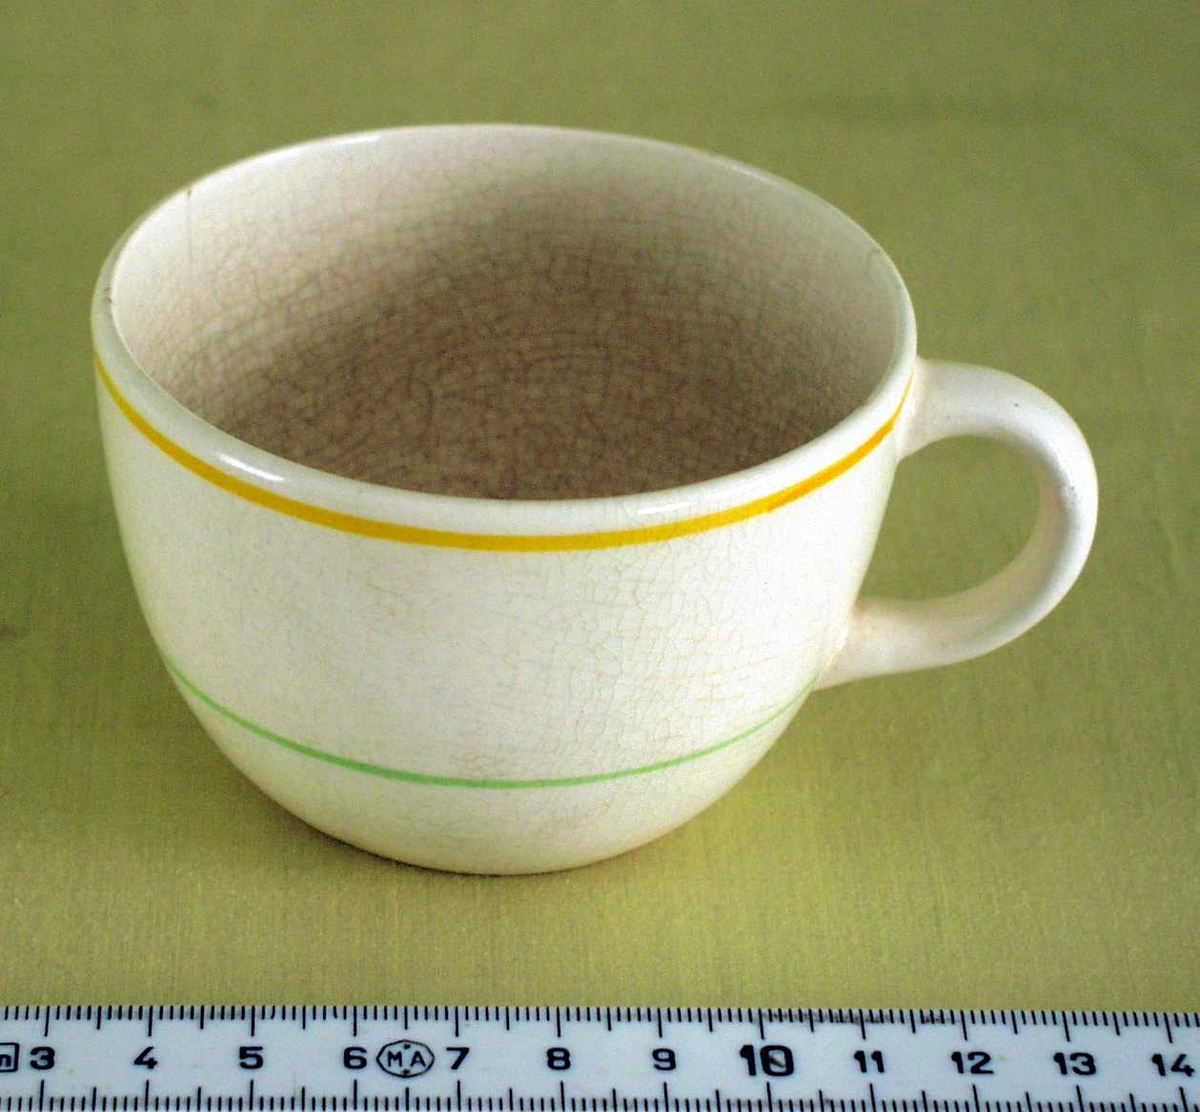 Hvit, keramisk kaffekopp med hank. Dekorert med en orange og en grønn stripe på utsiden.